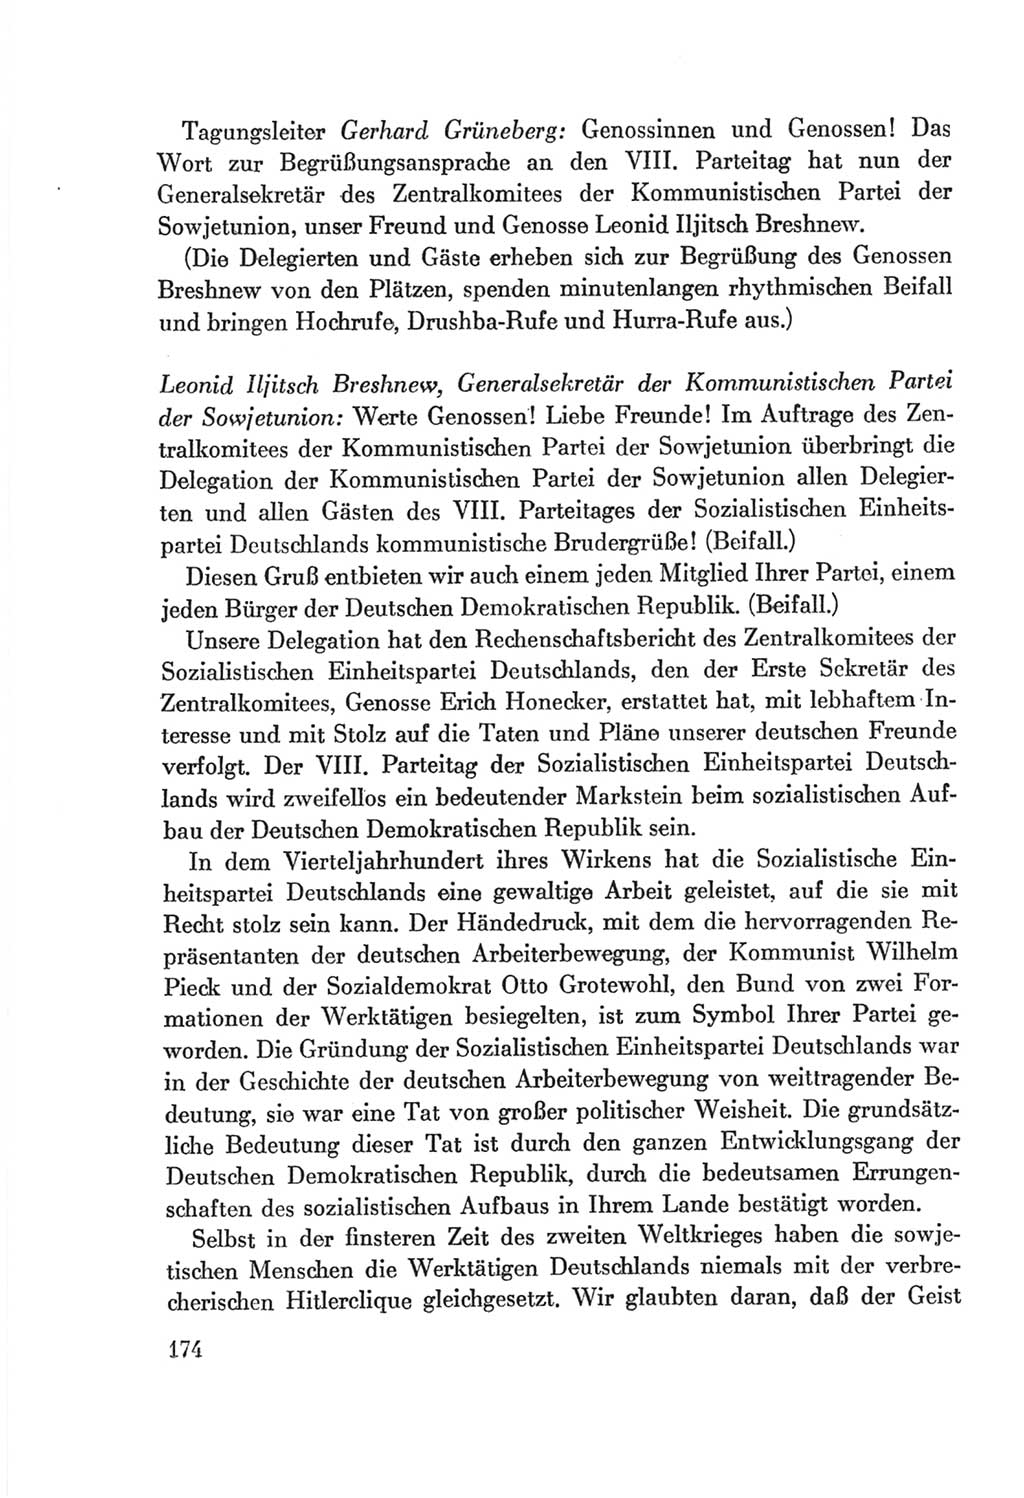 Protokoll der Verhandlungen des Ⅷ. Parteitages der Sozialistischen Einheitspartei Deutschlands (SED) [Deutsche Demokratische Republik (DDR)] 1971, Band 1, Seite 174 (Prot. Verh. Ⅷ. PT SED DDR 1971, Bd. 1, S. 174)